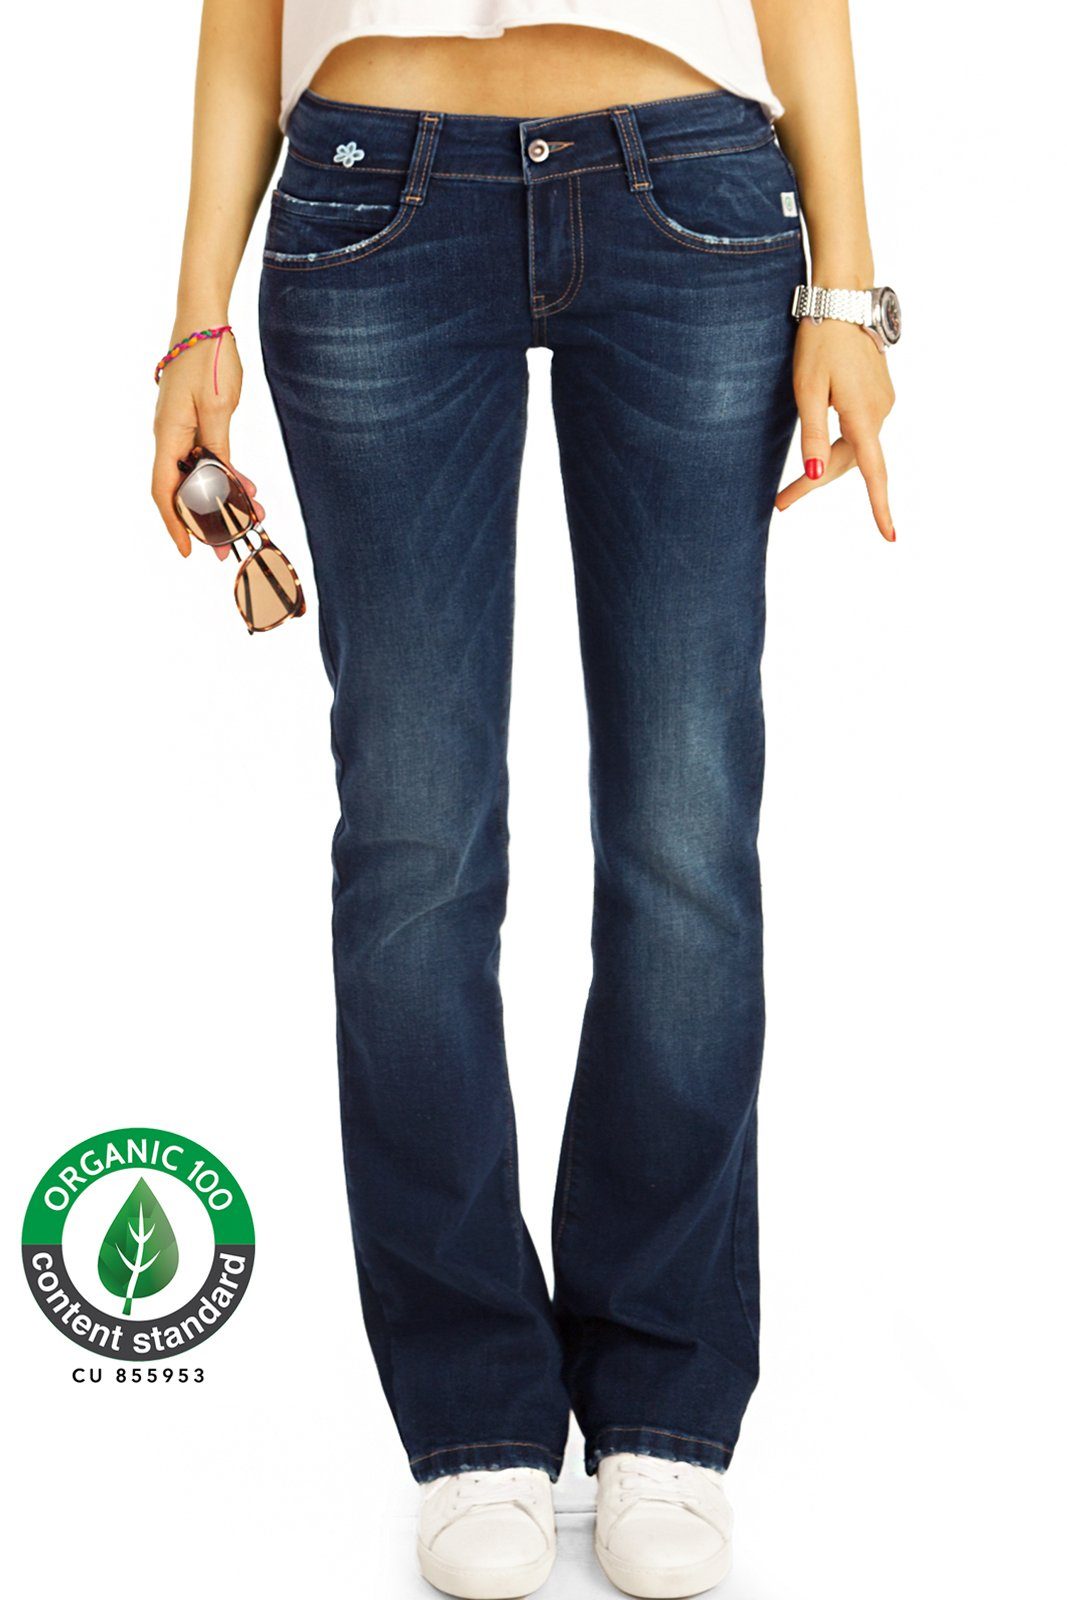 be styled Bootcut-Jeans »Bio_005 Damen Jeanshosen mit ausgestelltem Bein in  dunkelblau low waist« online kaufen | OTTO